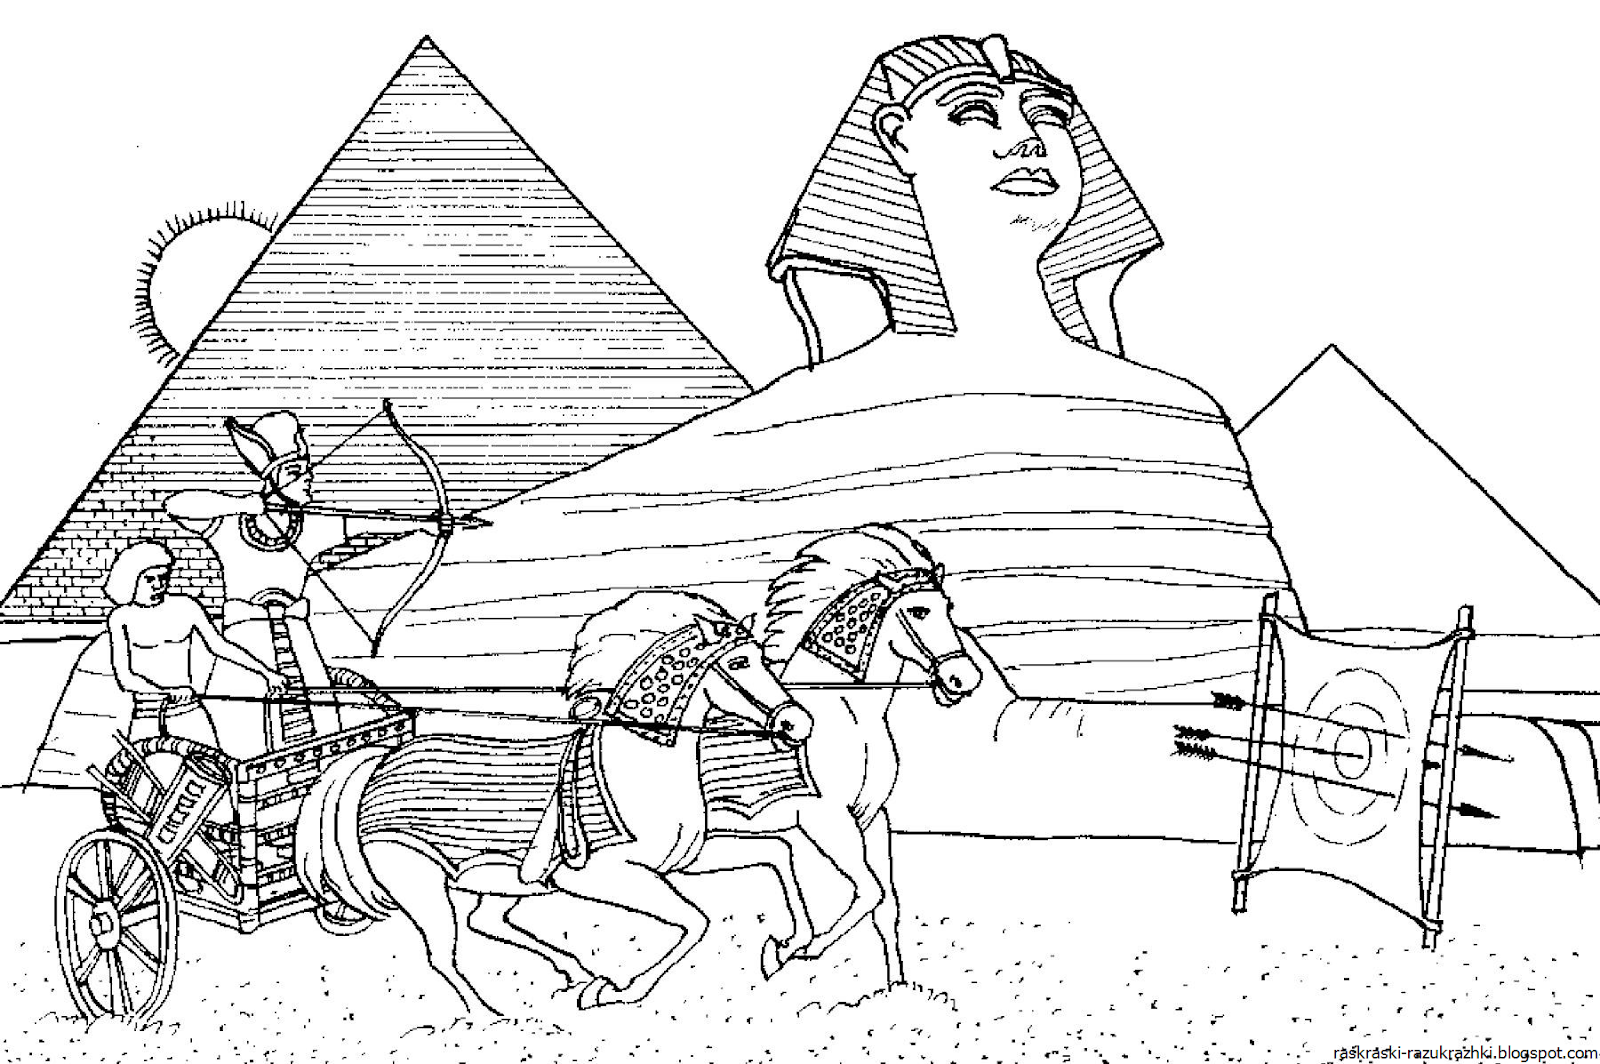 Древний египет рисунки 5 класс изо. 7 Чудес света пирамида Хеопса рисунок. Пирамида Хеопса семь чудес света раскраска для детей. Египетские пирамиды в древнем Египте зарисовки. Чудеса света пирамида Хеопса раскраска.